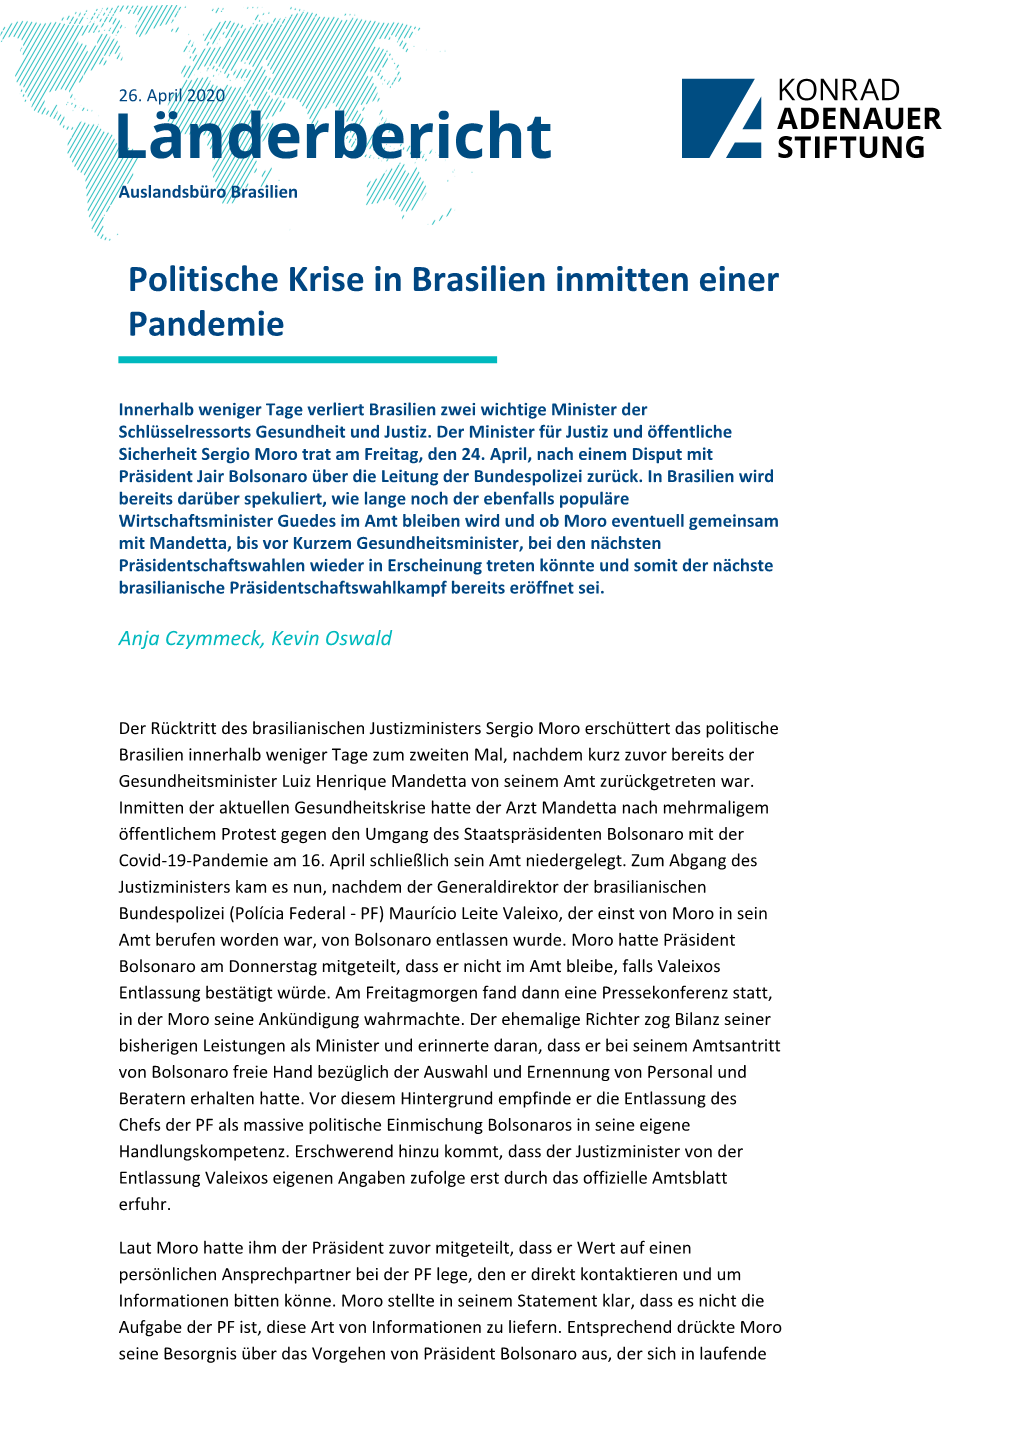 Politische Krise in Brasilien Inmitten Einer Pandemie